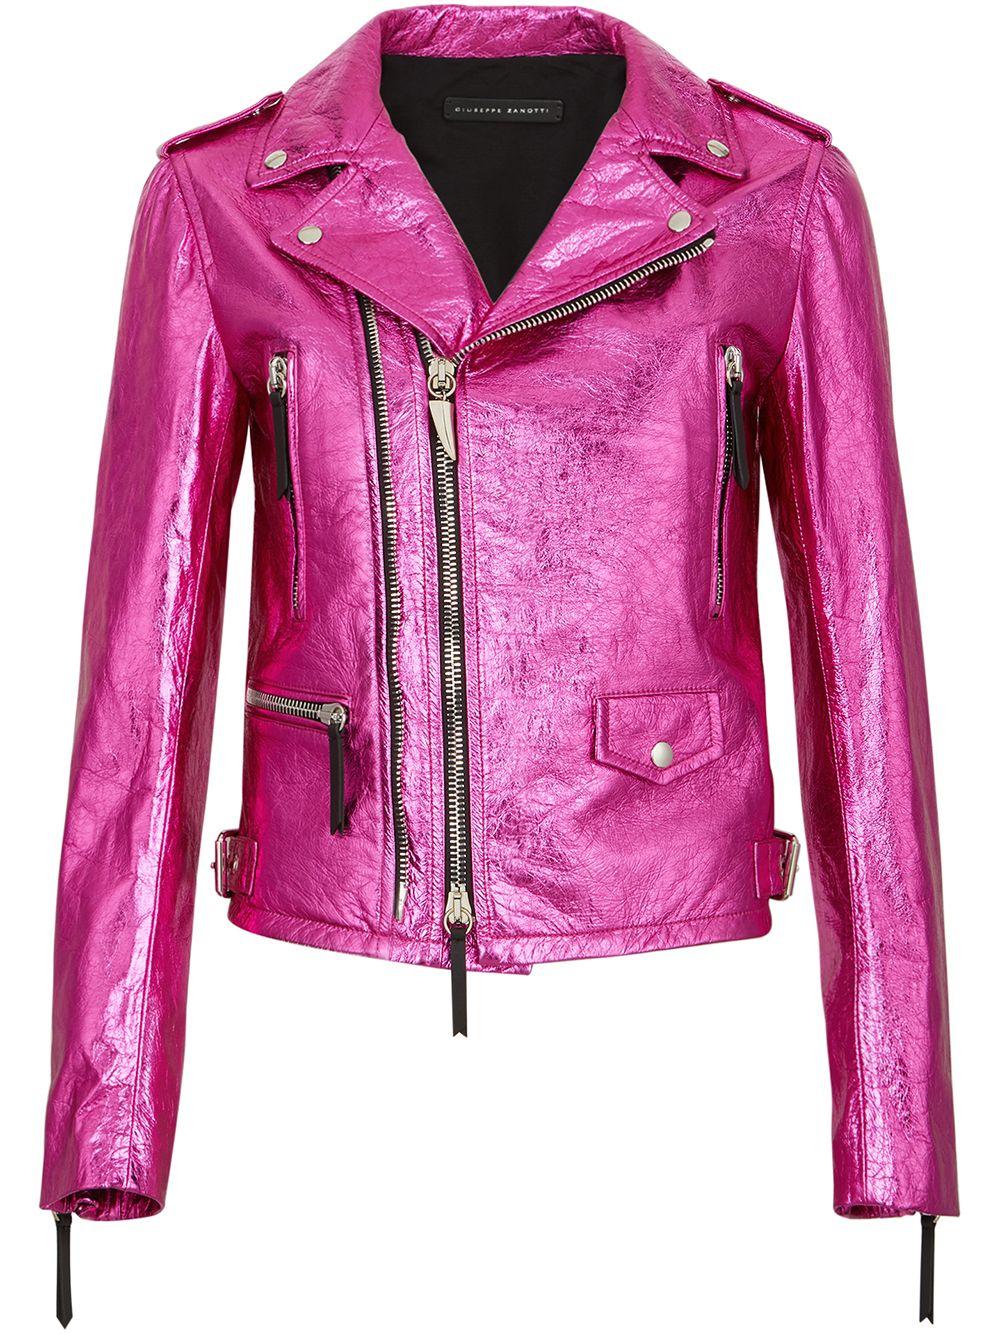 Giuseppe Zanotti Metallic Biker Jacket in Pink | Lyst